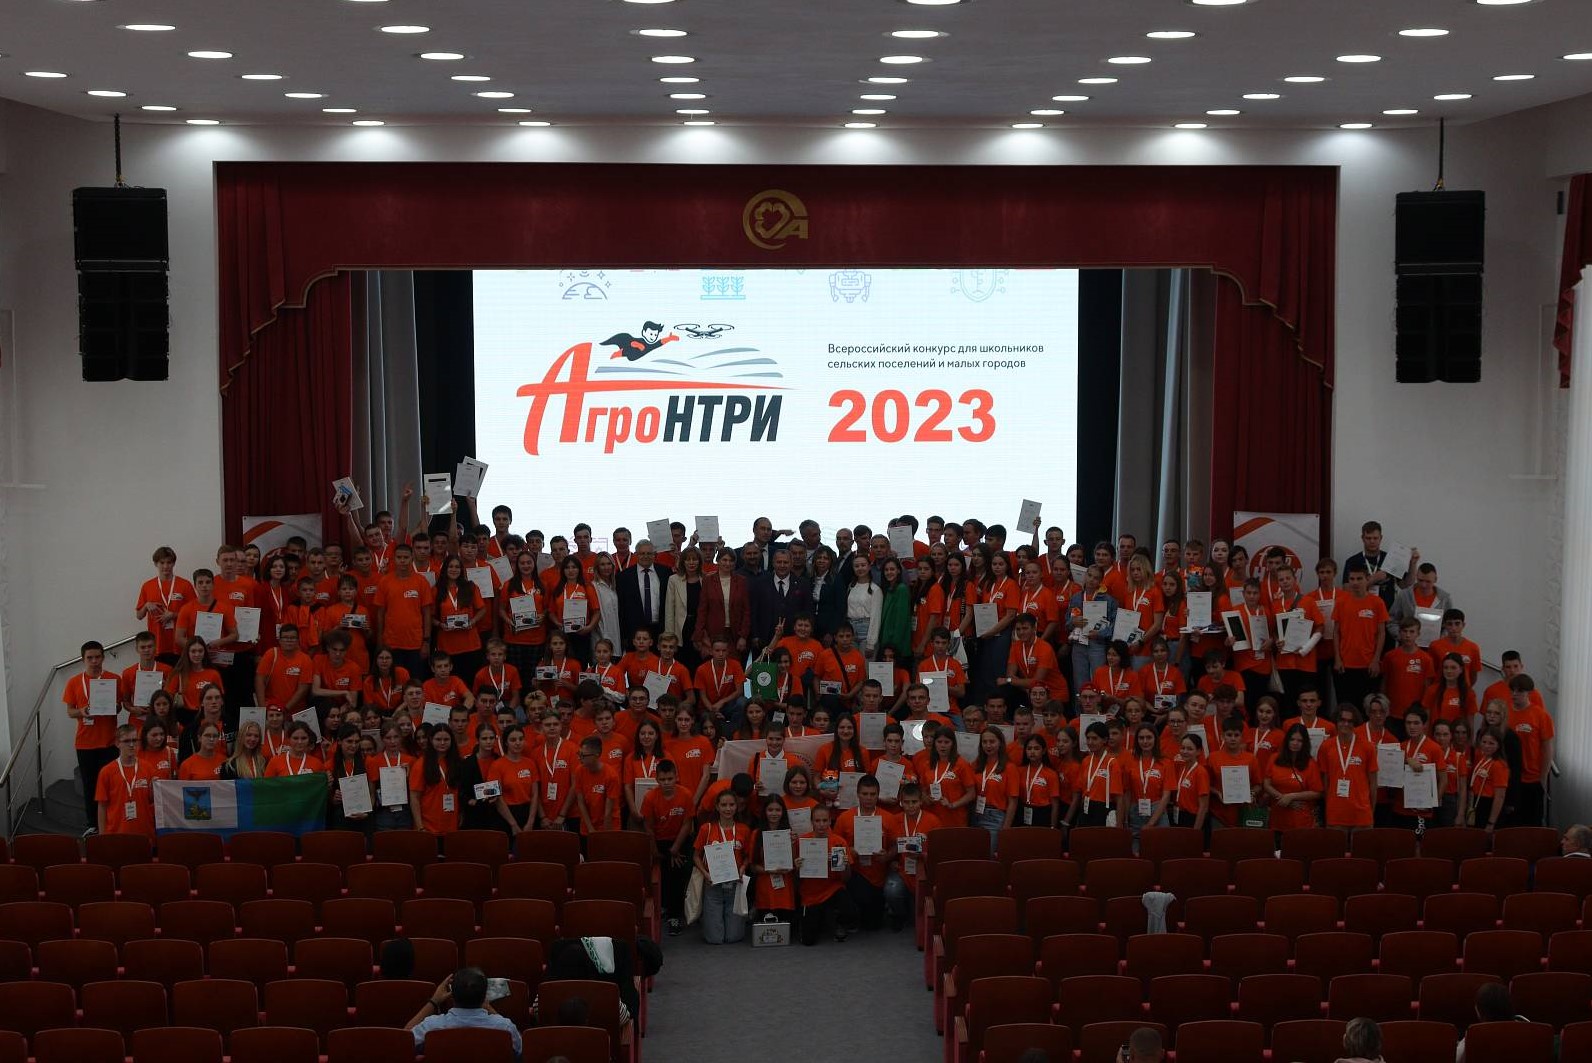 Директор ВНИВИП приняла участие в церемонии награждения школьников конкурса «АгроНТРИ-2023»